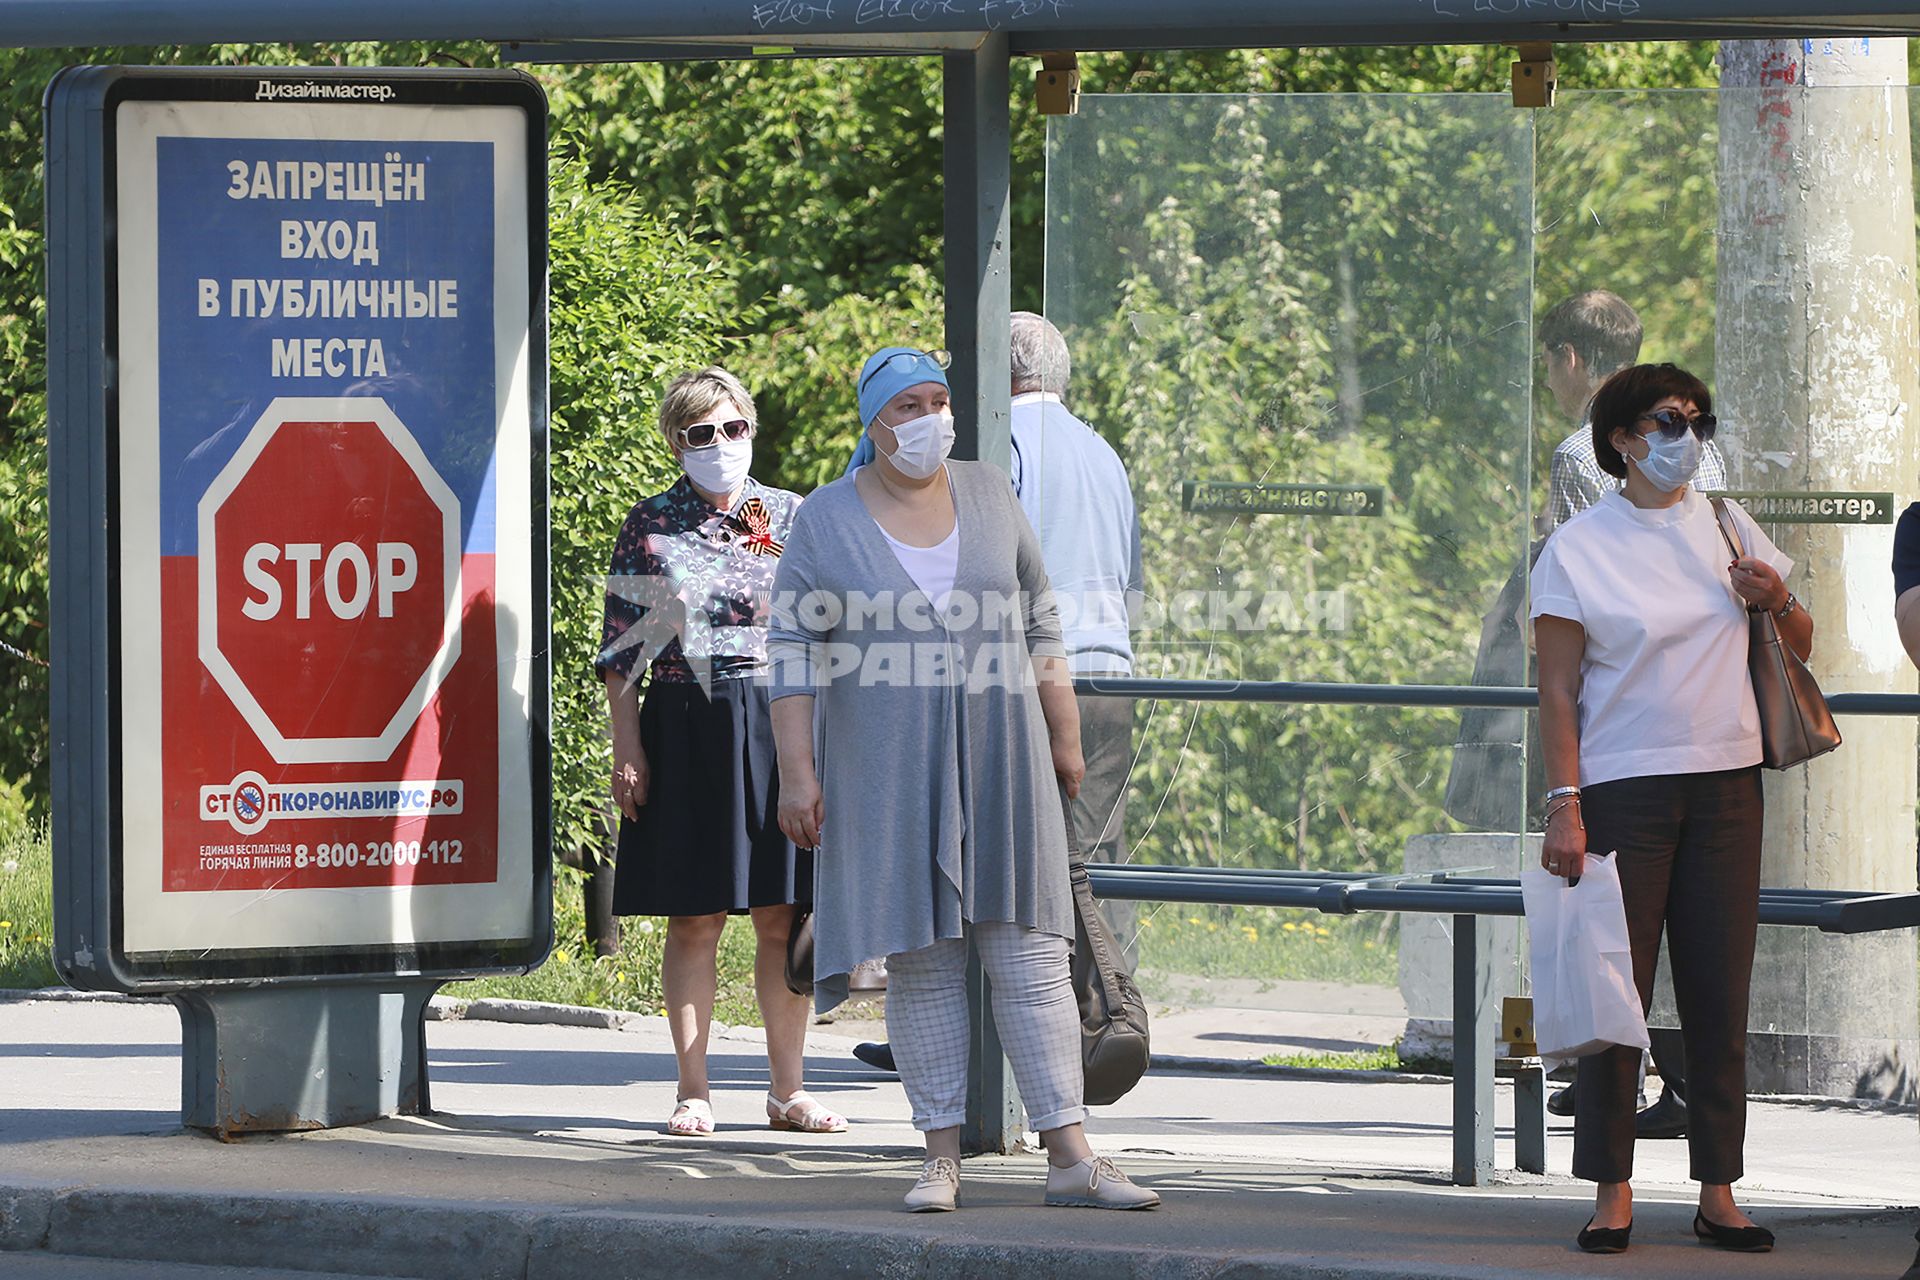 Барнаул. Пассажиры в медицинских масках на остановке общественного транспорта.